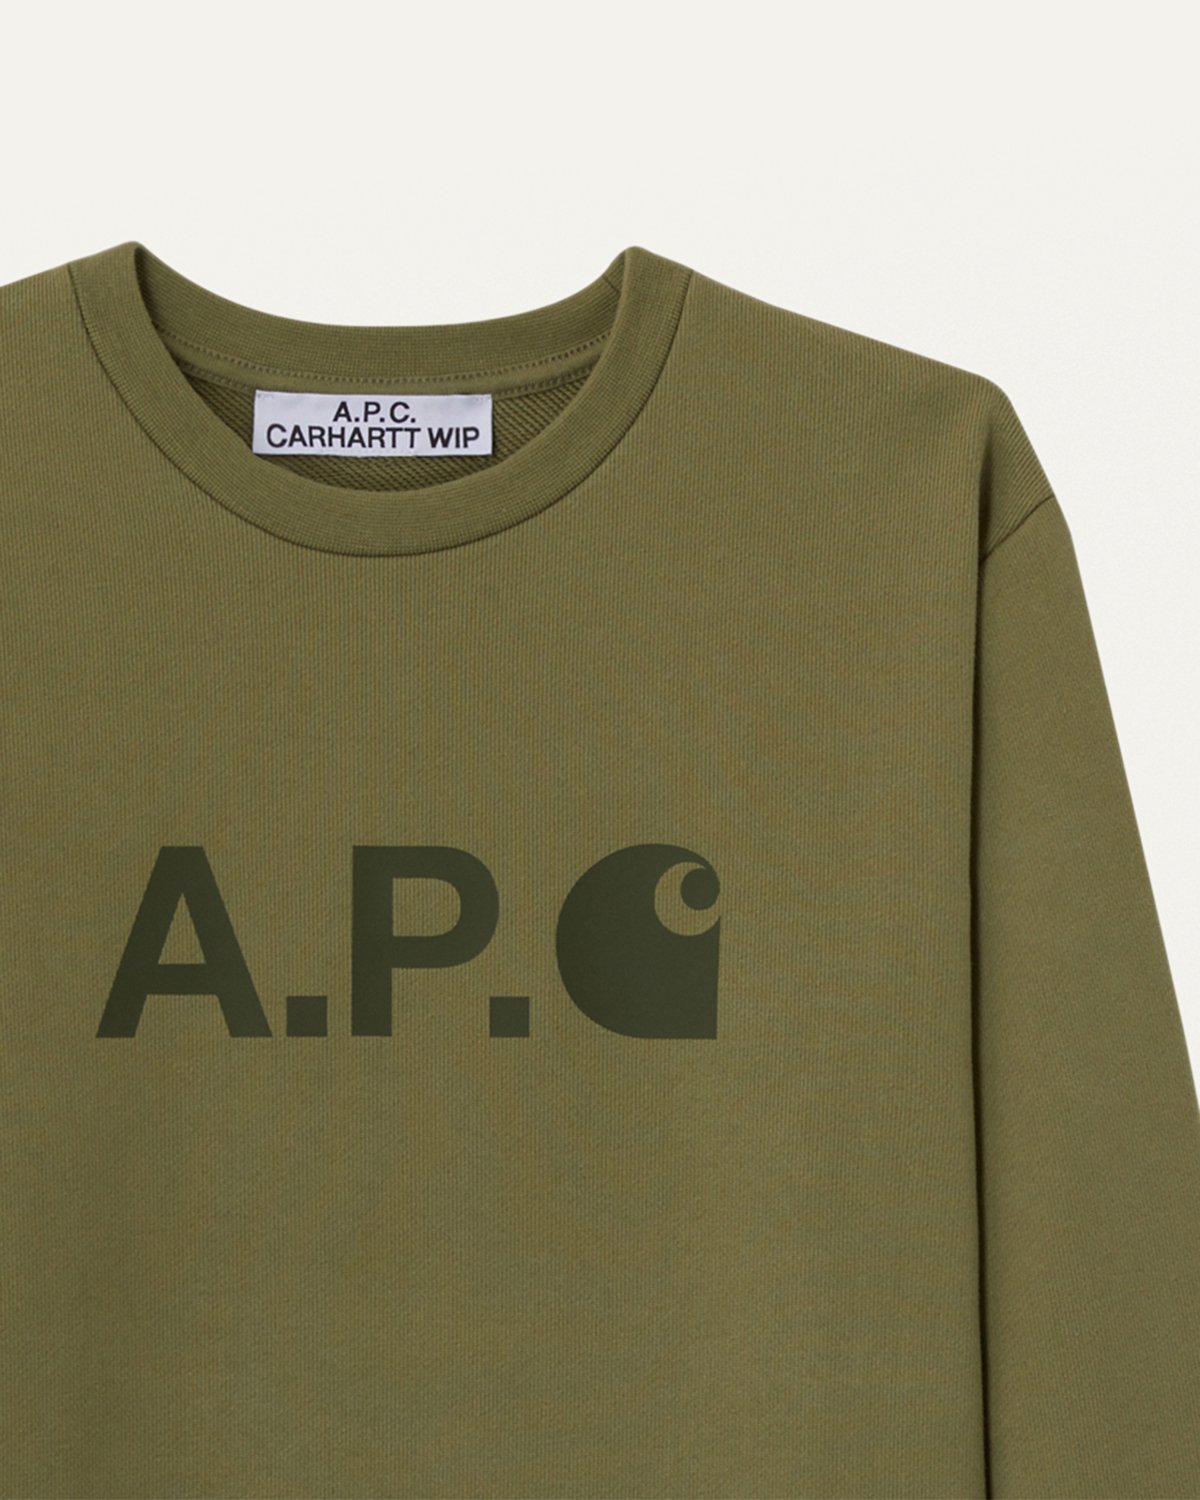 A.P.C. x Carhartt WIP - Ice Sweatshirt - Sweatshirts - Green - Image 3